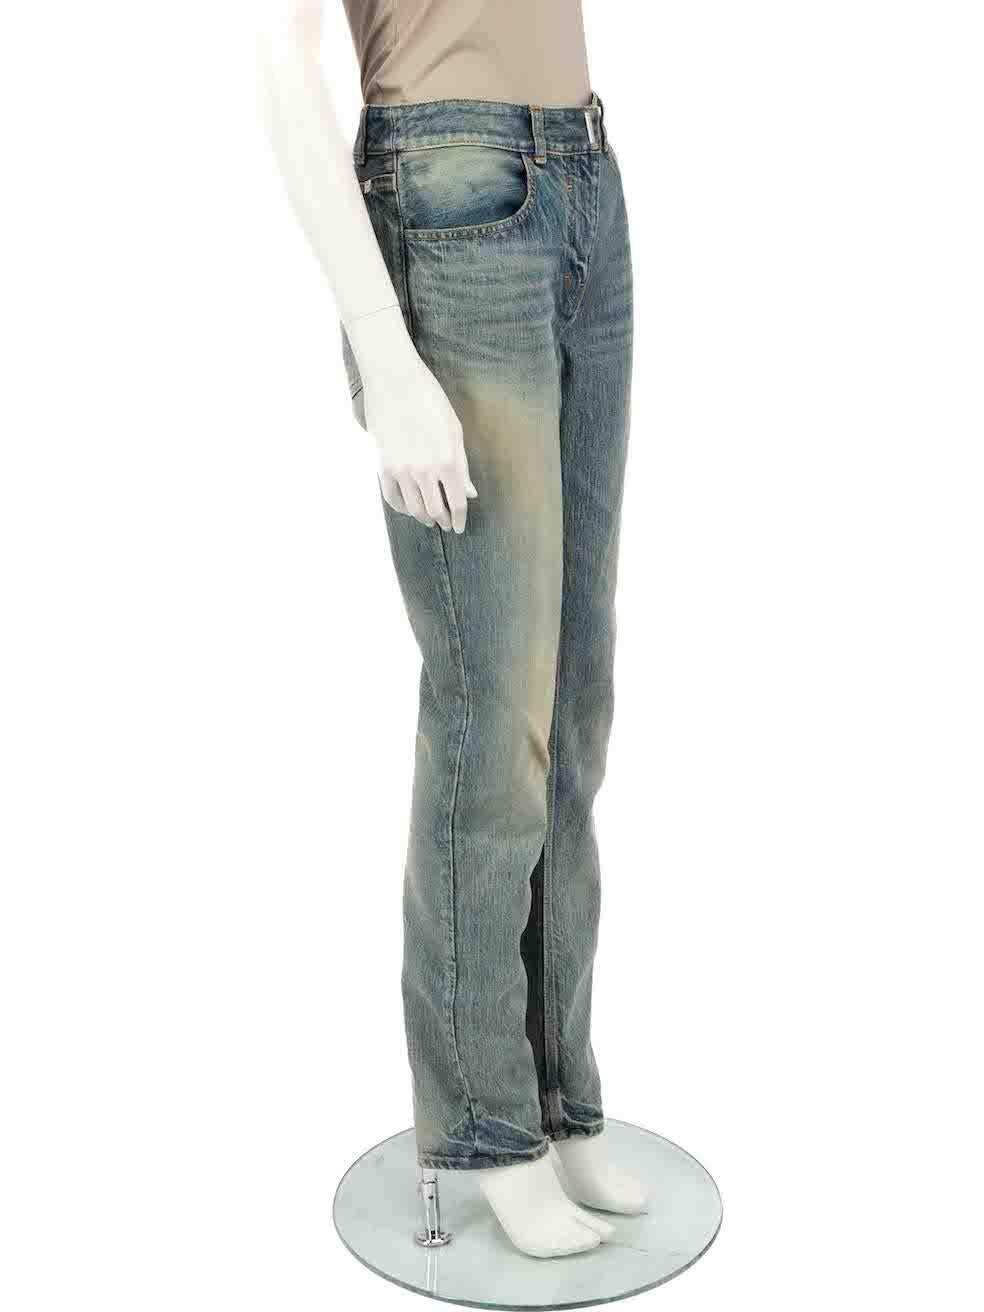 L'ÉTAT est bon. L'usure générale des jeans est évidente. Signes d'usure modérés à l'avant et à l'arrière avec des marques décolorées - en particulier aux poignets sur cet article de revente d'occasion de la marque Givenchy.
